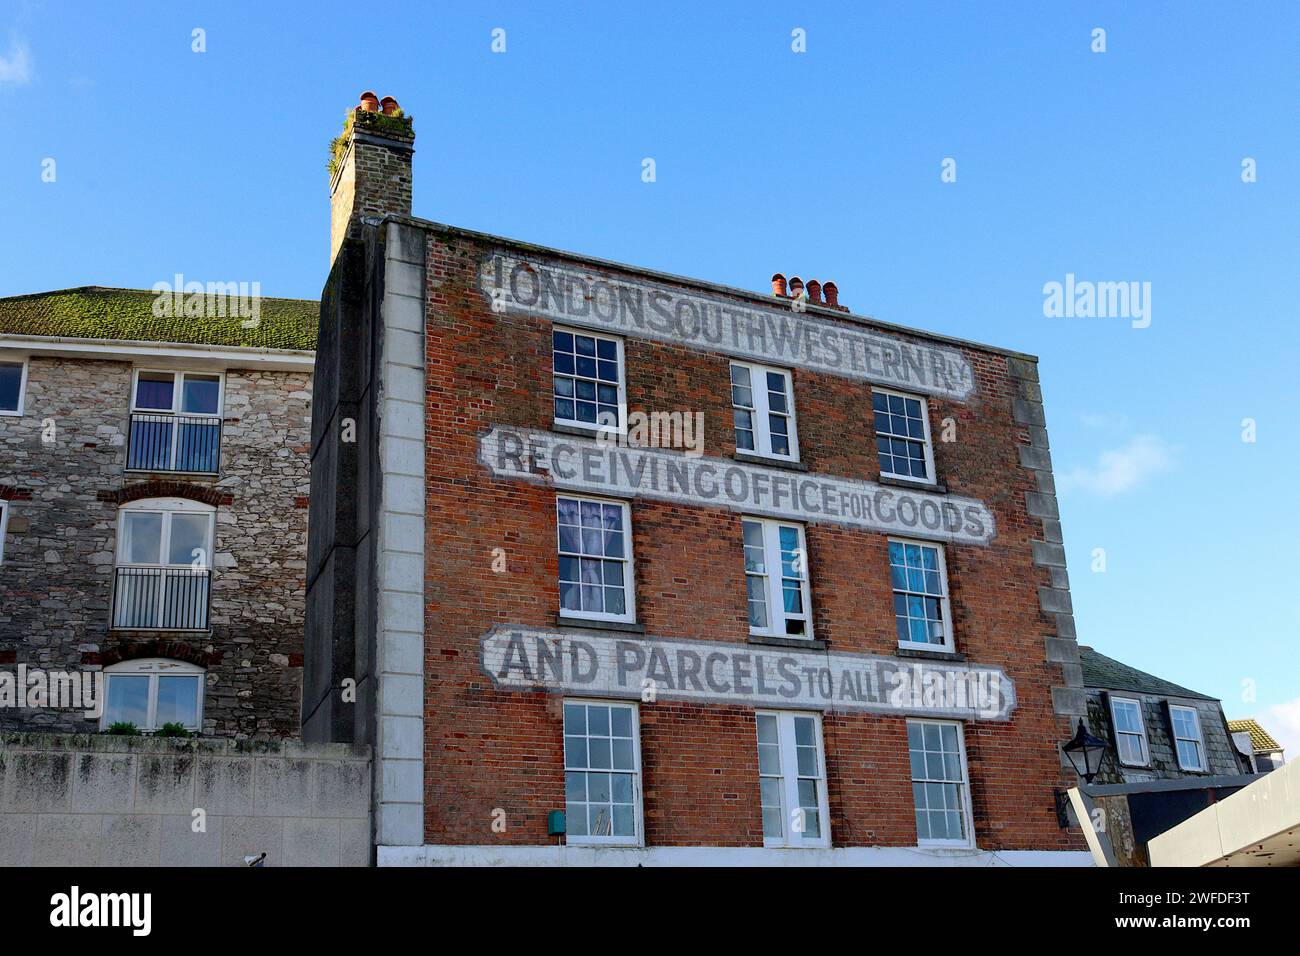 Les anciens bureaux de London & South Western Railway sur le front de mer Barbican, Plymouth, Devon, avec des calligraphies victoriennes peintes sur la façade en briques. Banque D'Images